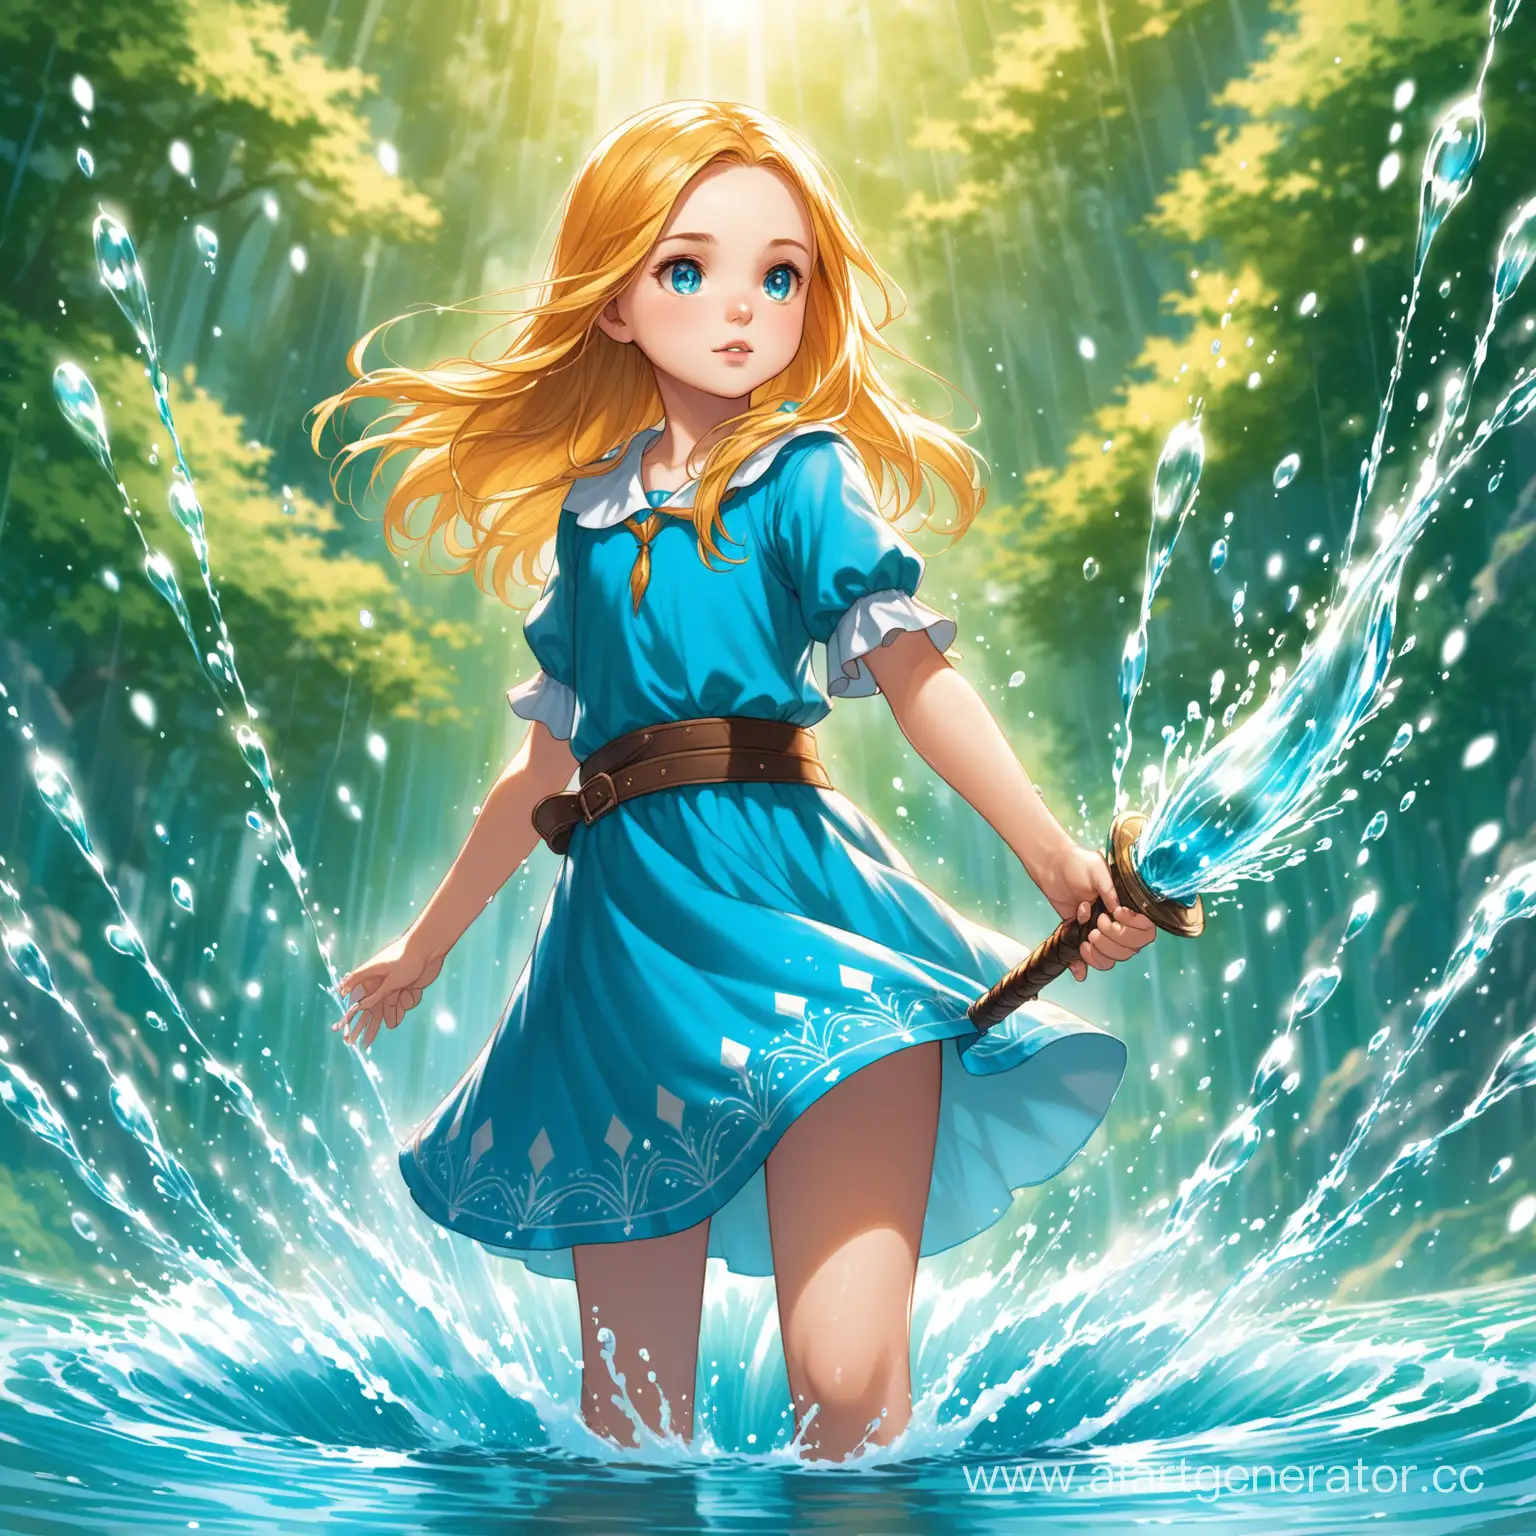 молодая и отважная воительница Алиса она владеет магией воды и владеем им в совершенстве